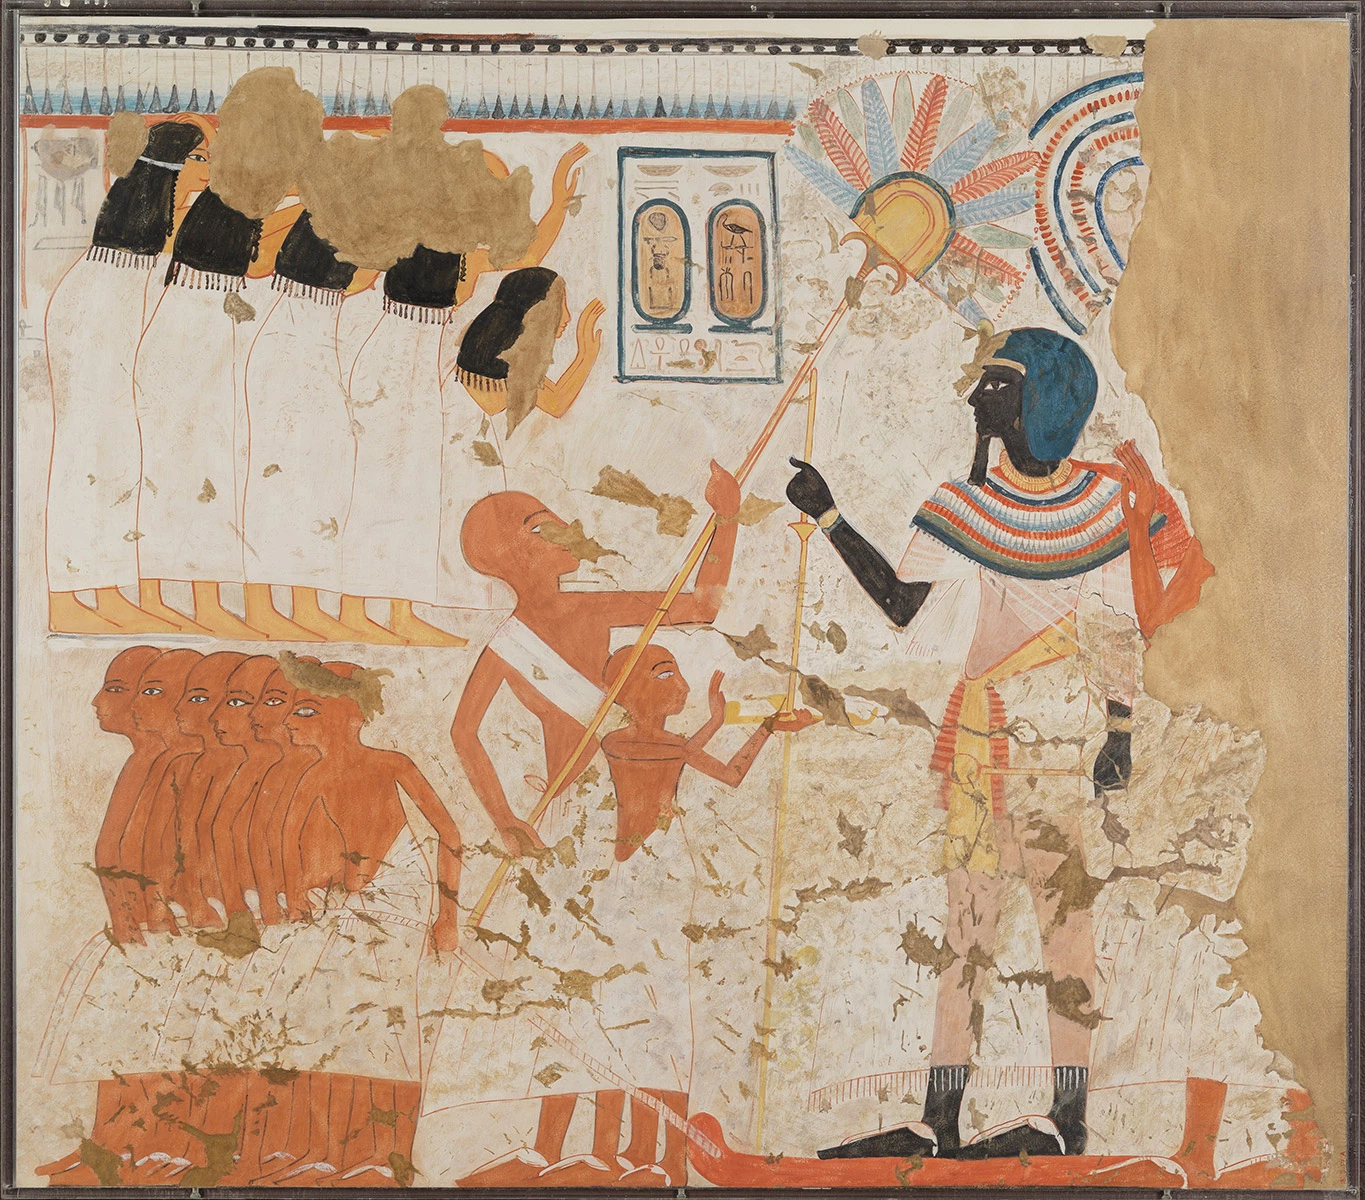 <p>Копия рисунка из Древнего Египта. Оригинал относится к 1294&ndash;1279 годам. Его воспроизвел иллюстратор и переписчик Норман Де Гарис Дэвис в 1911 году</p>